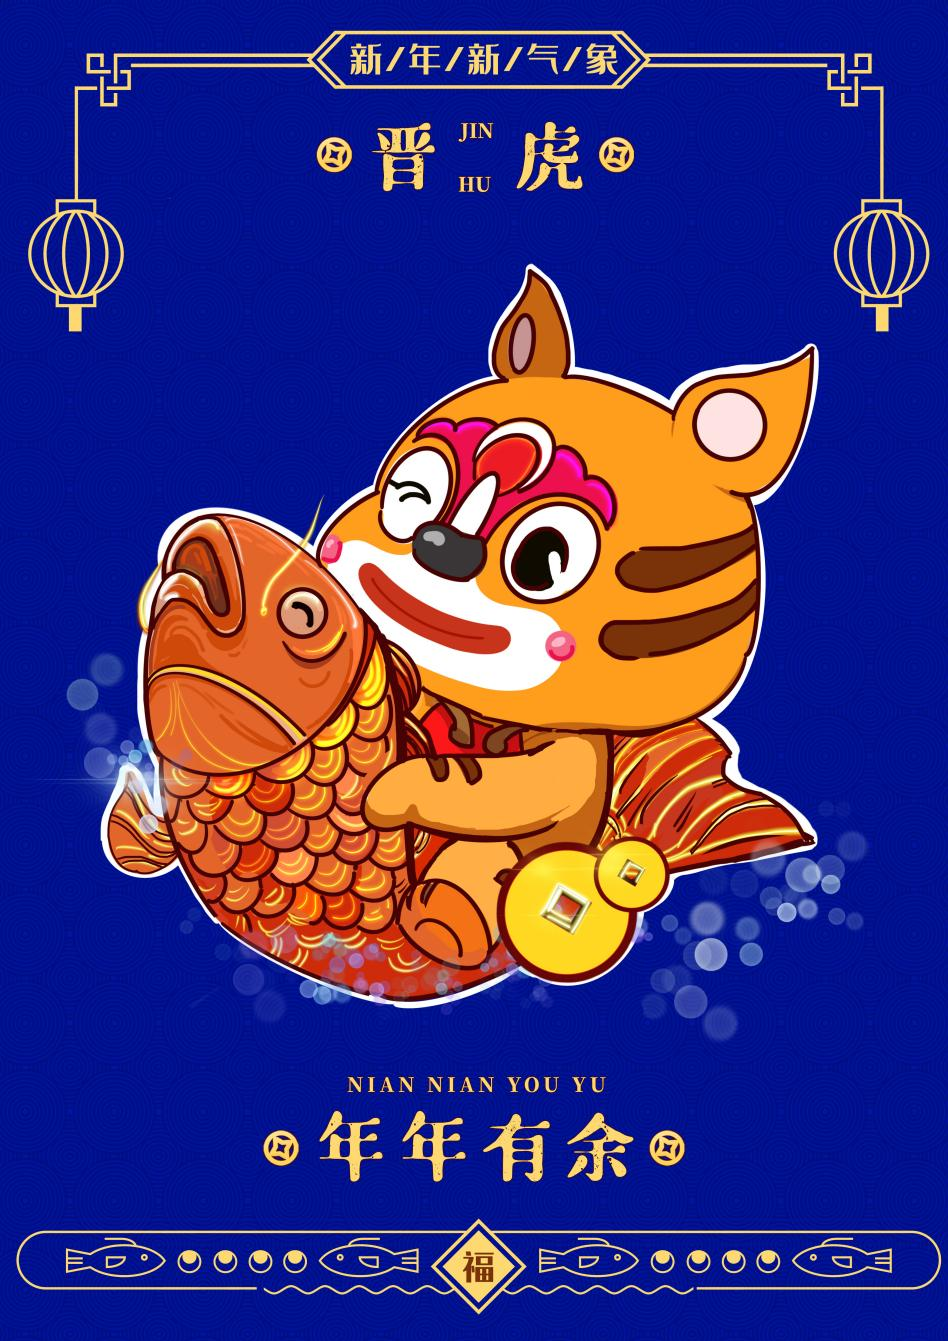 山西省文化和旅游厅发布虎年春节IP形象“晋虎”！